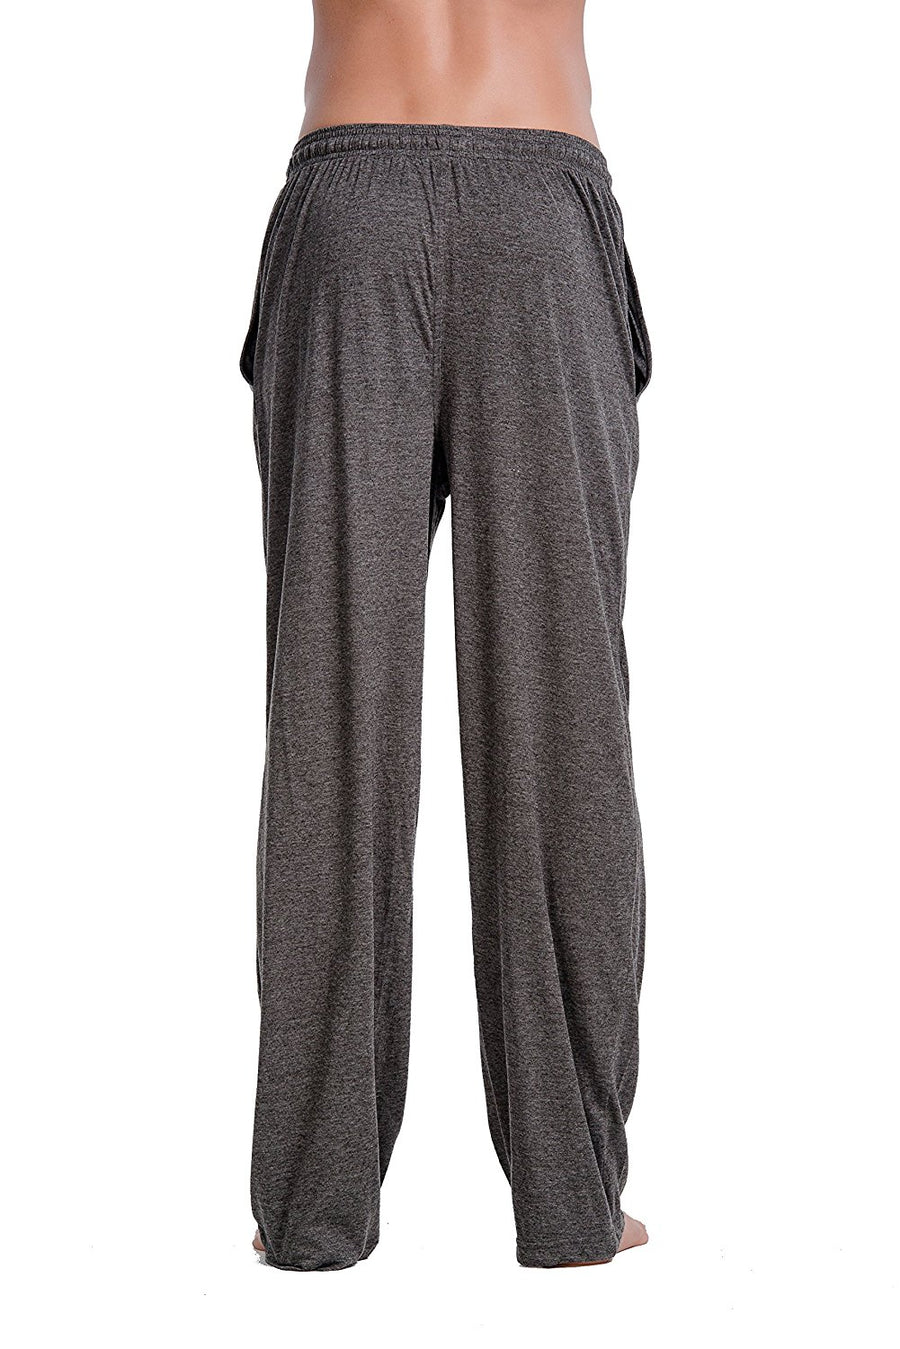 100% Cotton Jersey Knit Pajama Pants 